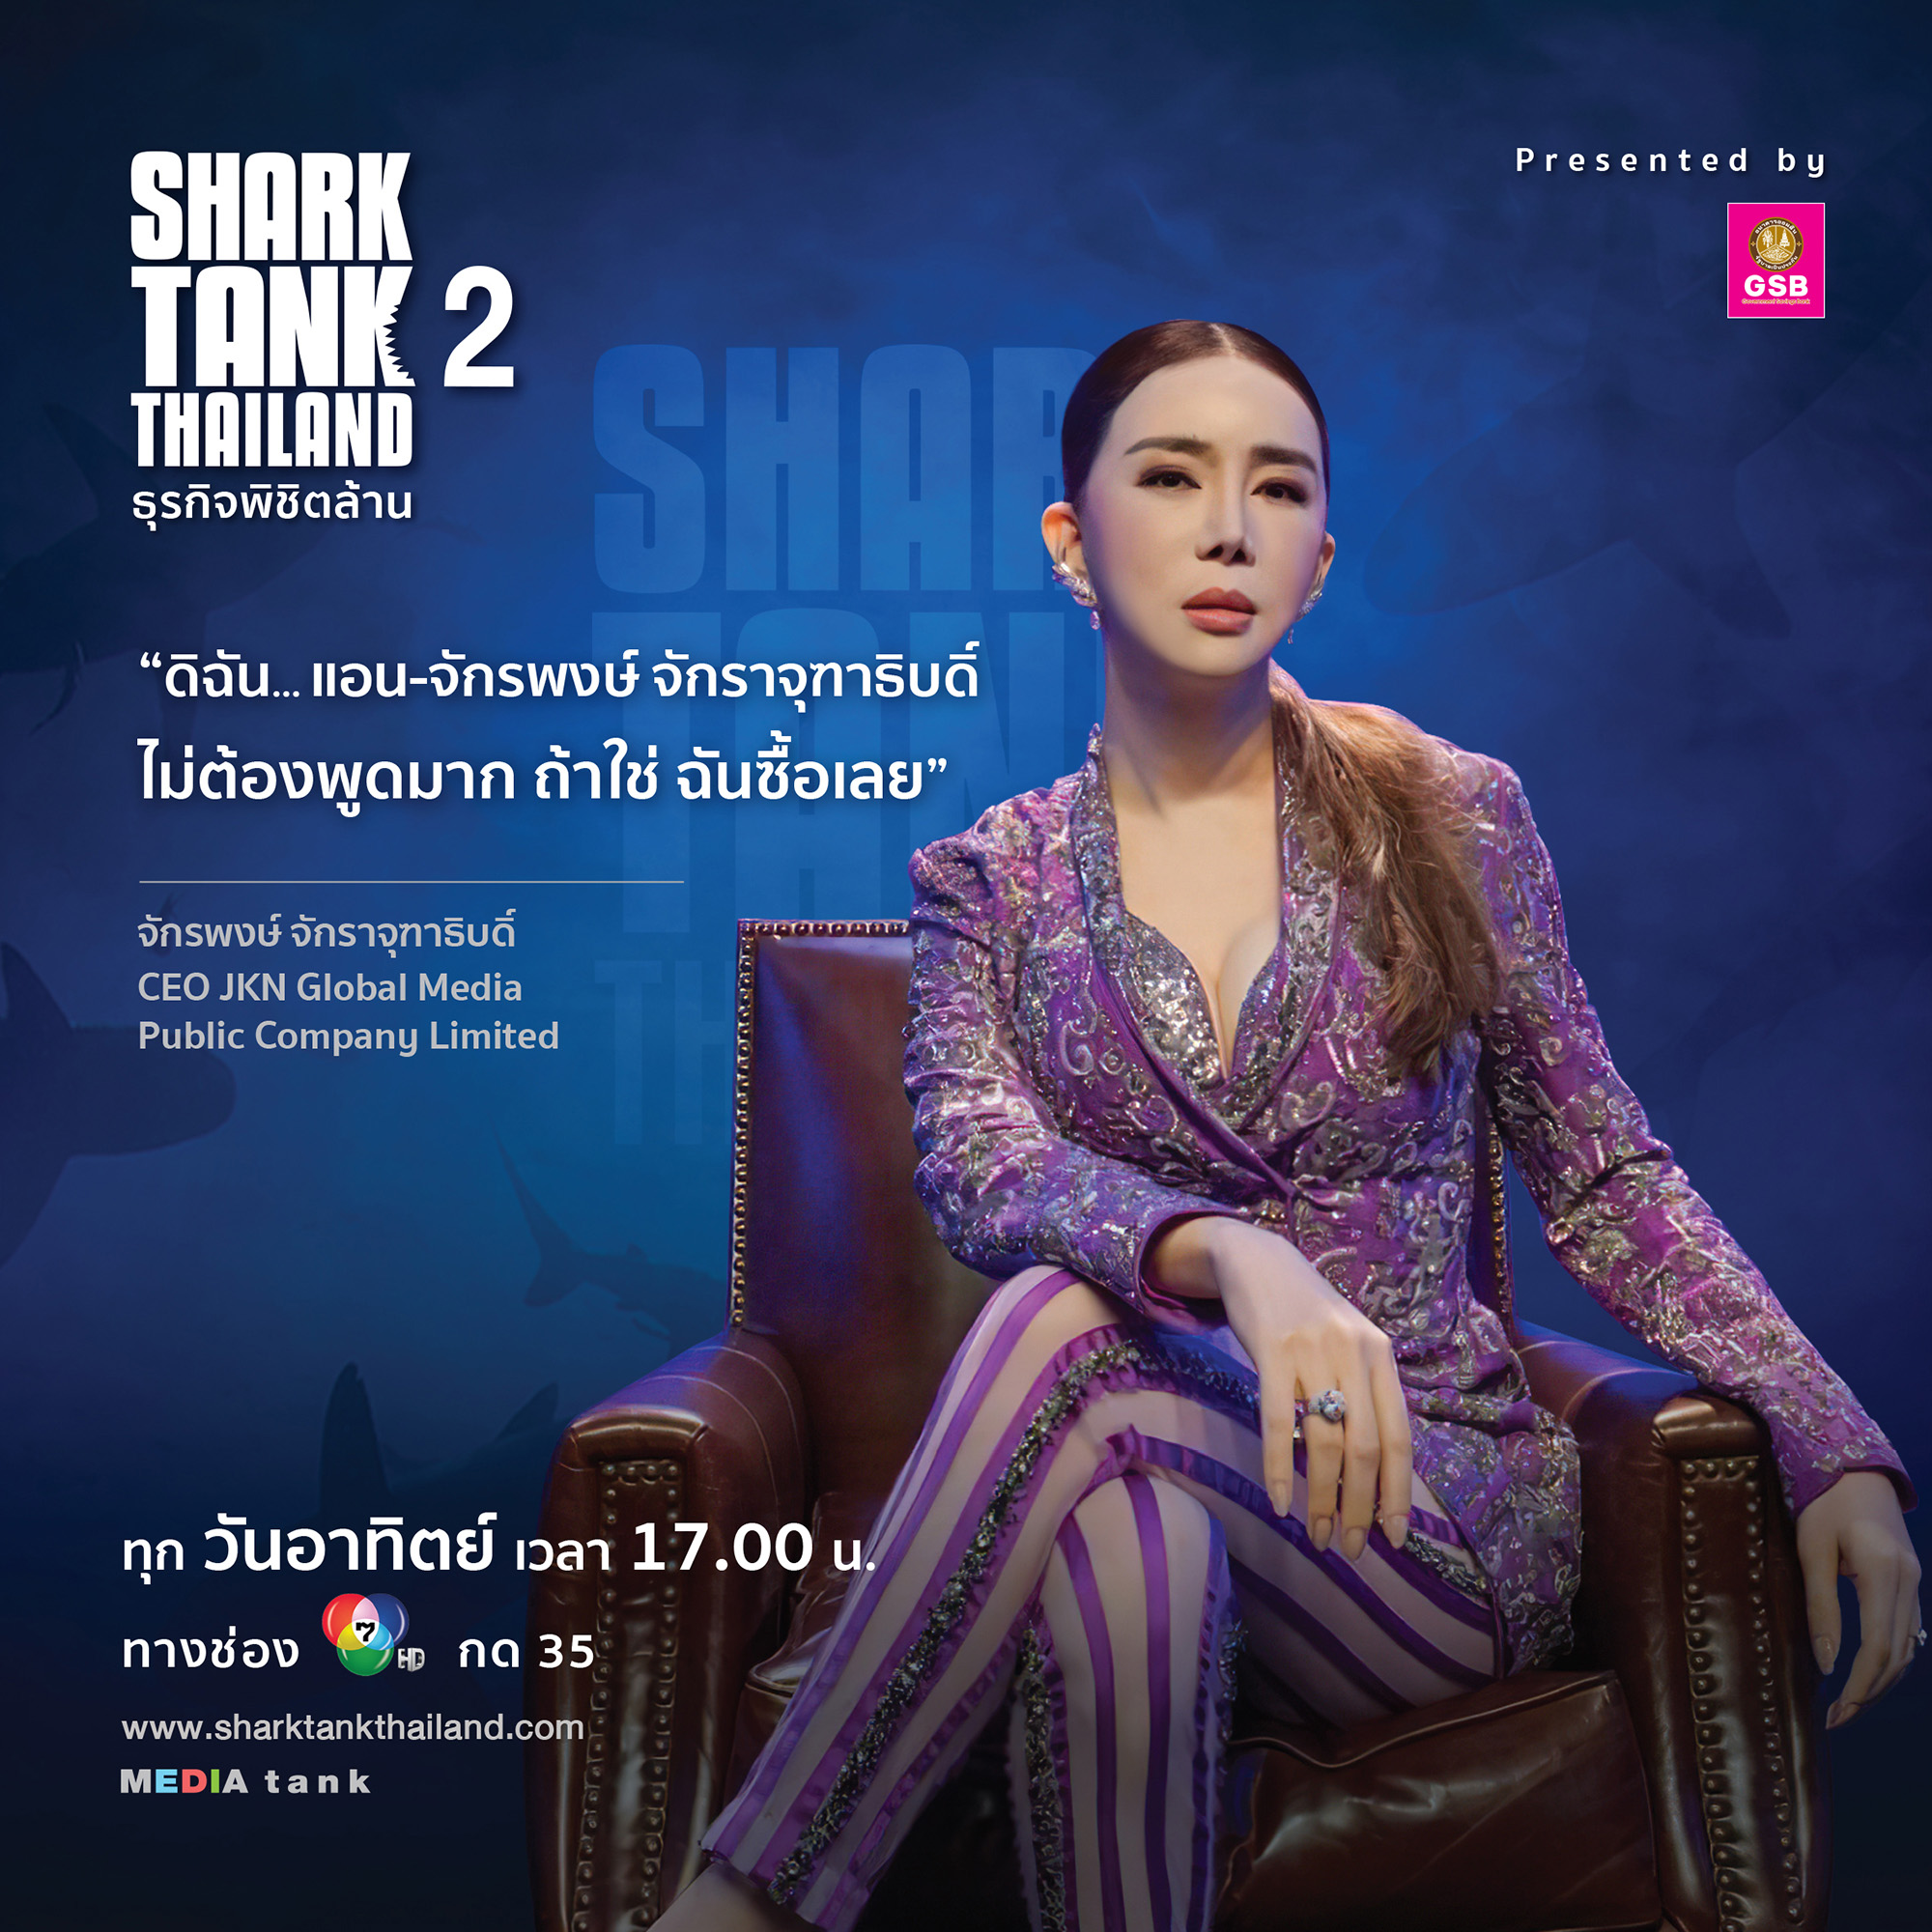 แอน จักรพงษ์ หรือ #SharkAnne ควักเงิน 5.5 ล้านร่วมทุน 2 ธุรกิจเด็ด ใน EP. 4 รายการ Shark Tank Thailand ซีซั่น 2